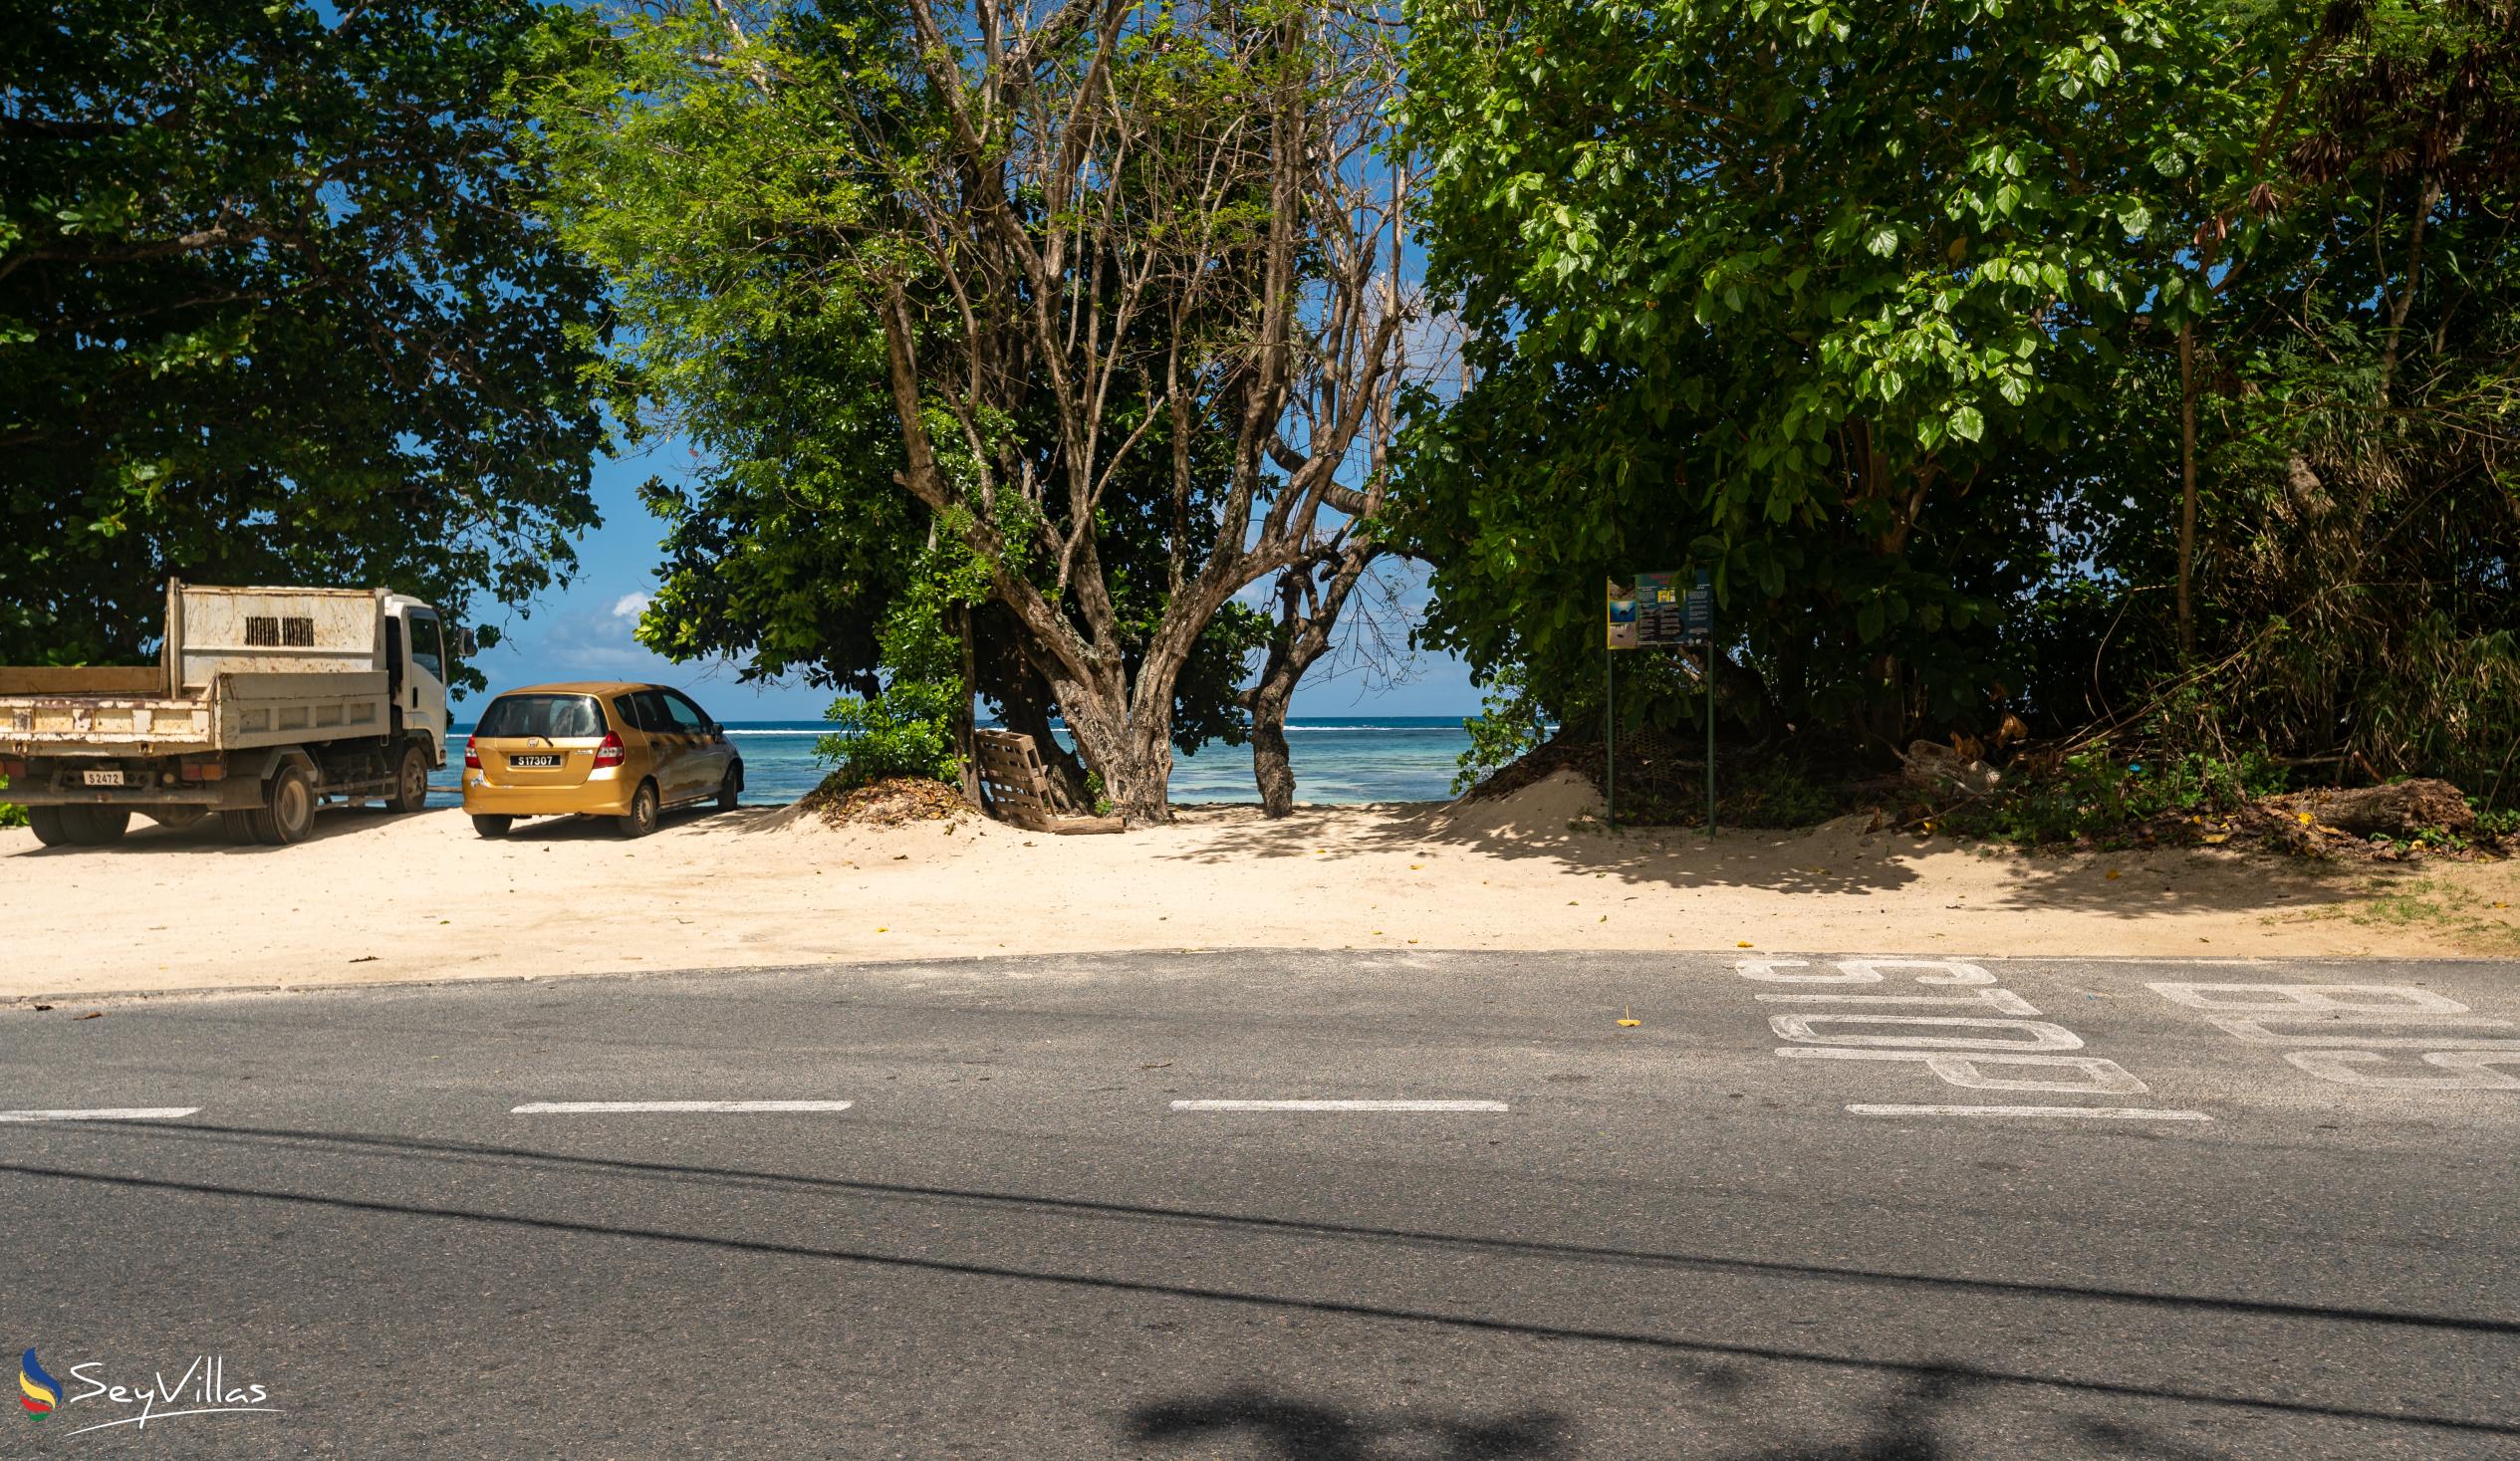 Foto 42: Villa Kordia - Posizione - Mahé (Seychelles)